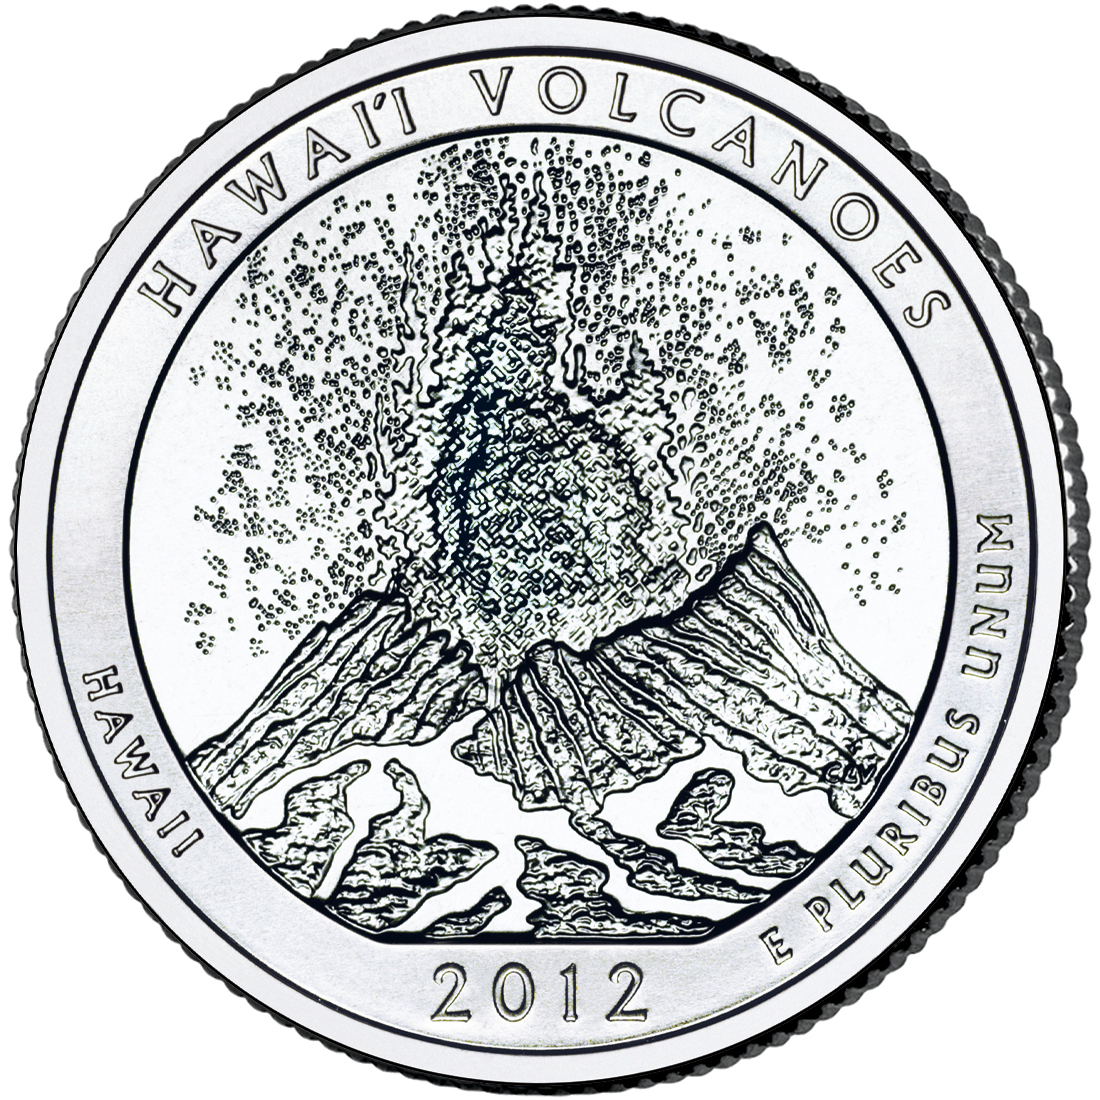 2012 Hawai’i Volcanoes National Park